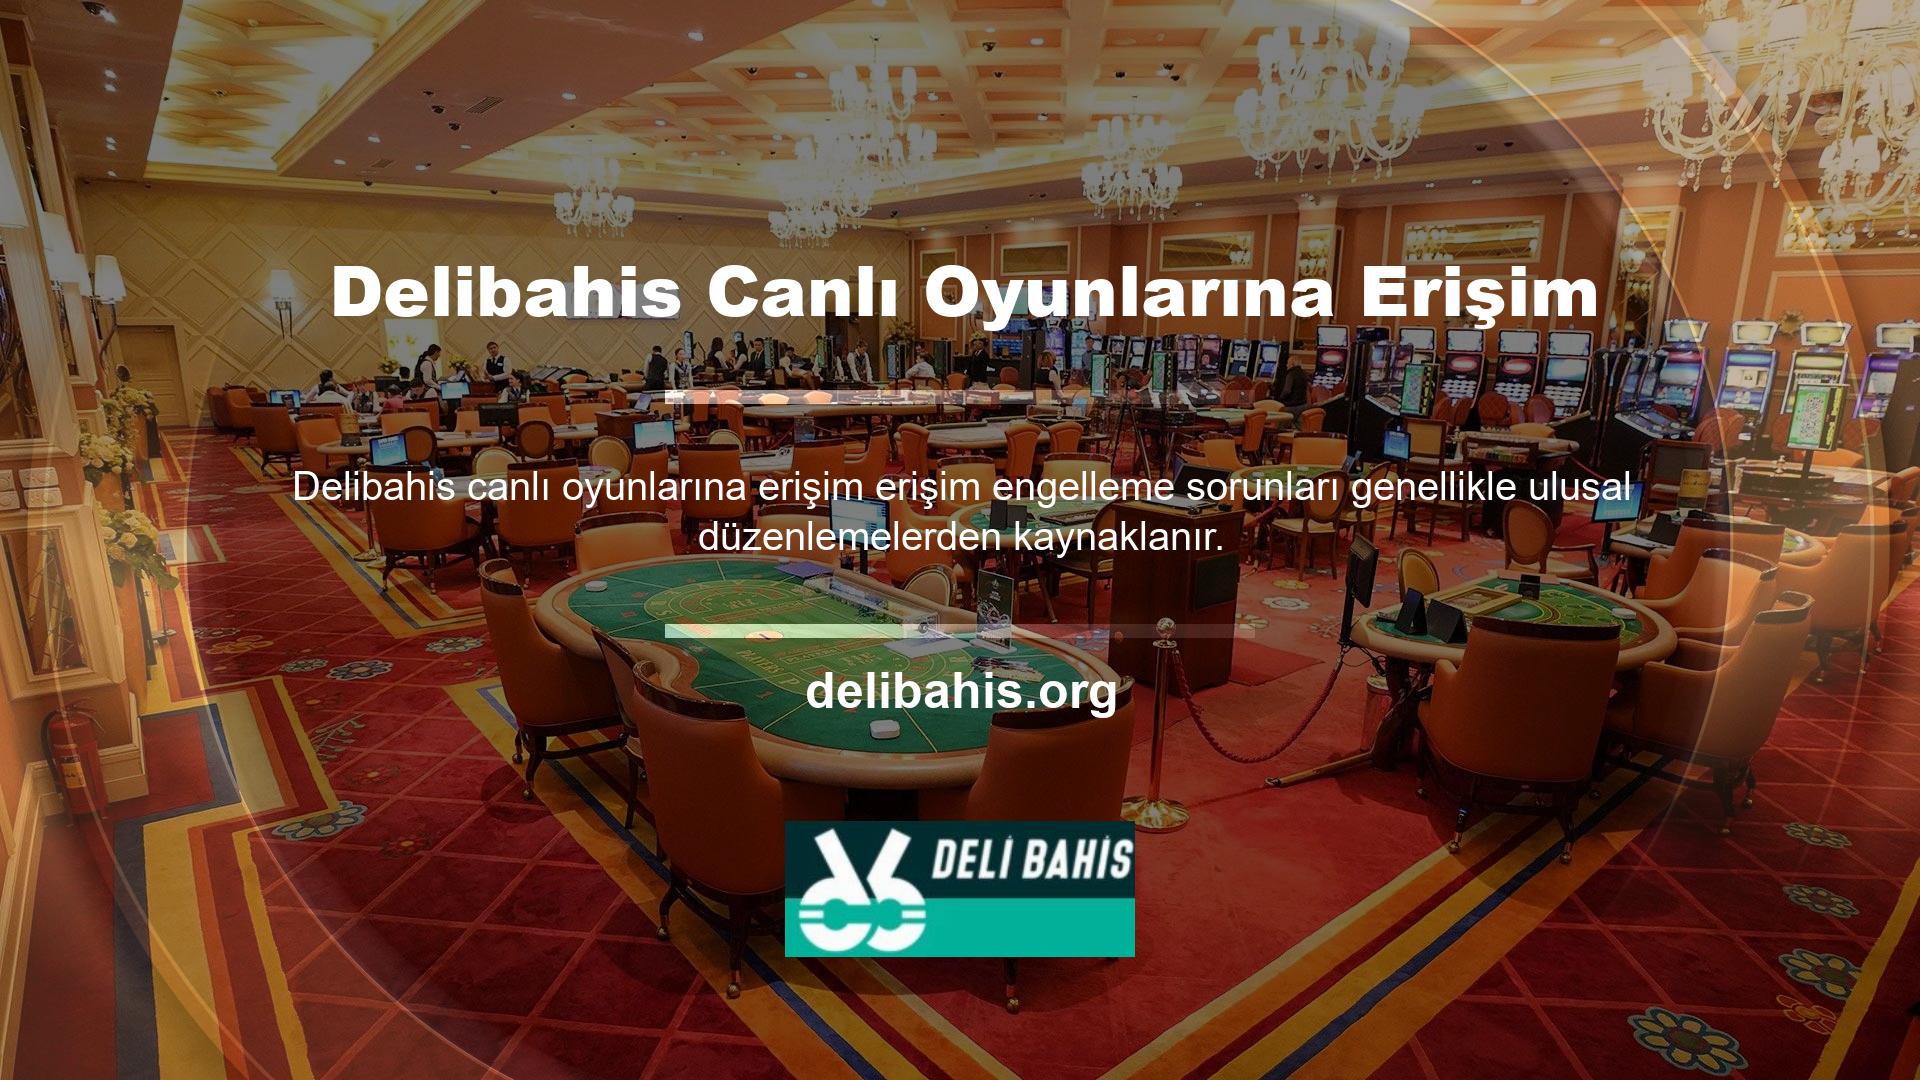 Örneğin Türkiye şehri, dış pazarları hedef alan casino kesinlikle yasaklamaktadır